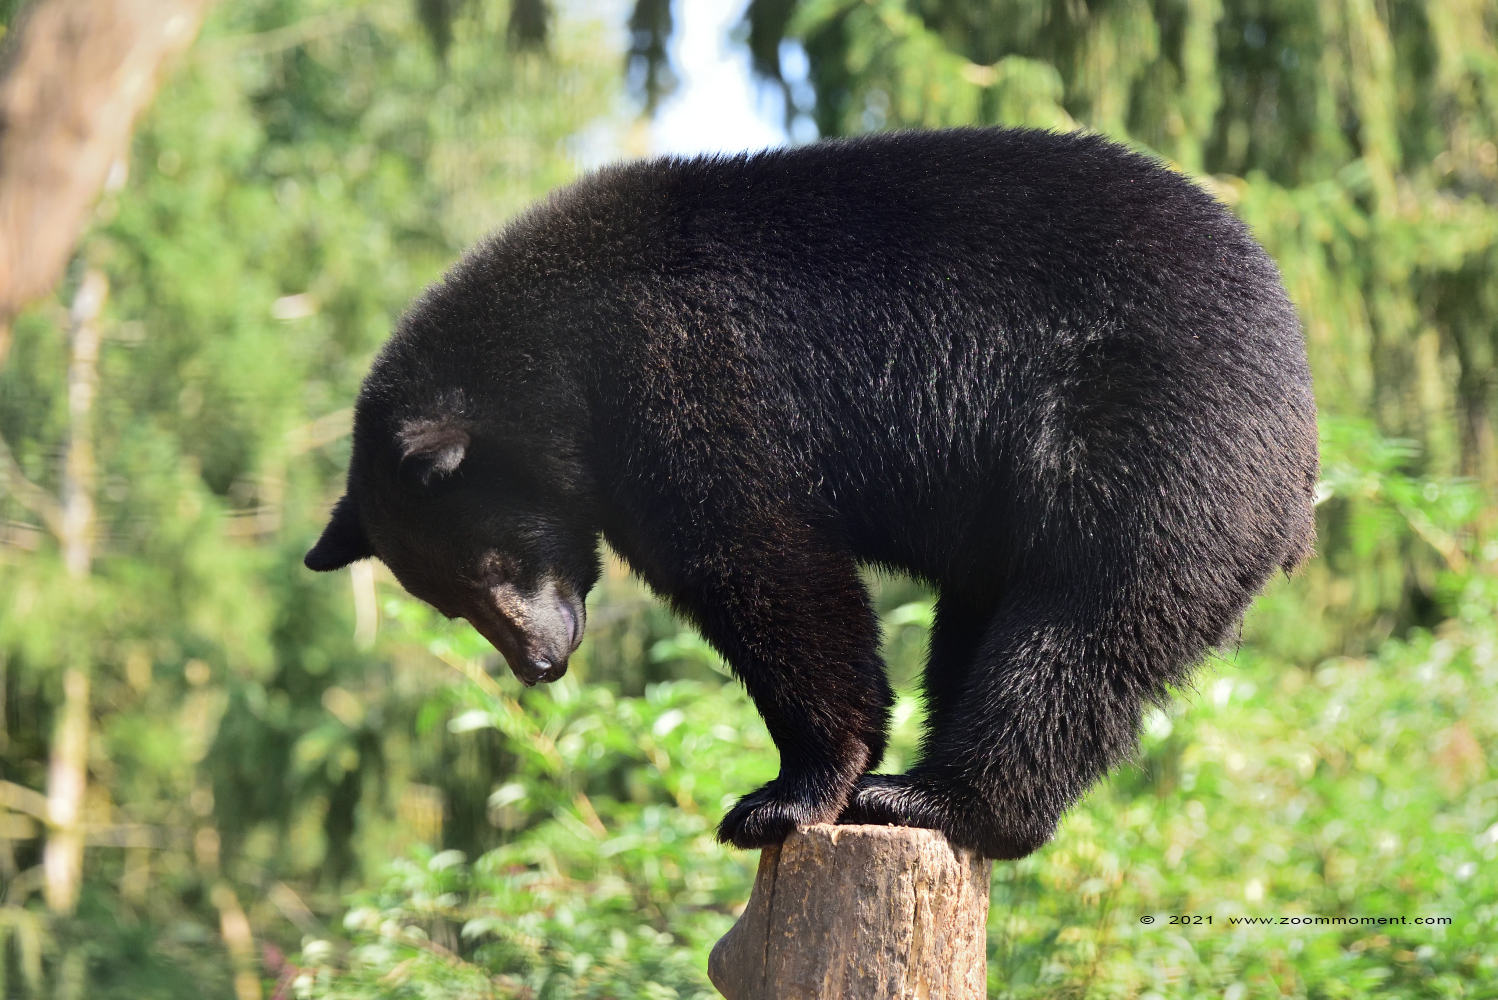 Amerikaanse zwarte beer ( Ursus americanus )  American black bear
Keywords: Ziezoo Volkel Nederland Amerikaanse zwarte beer Ursus americanus American black bear